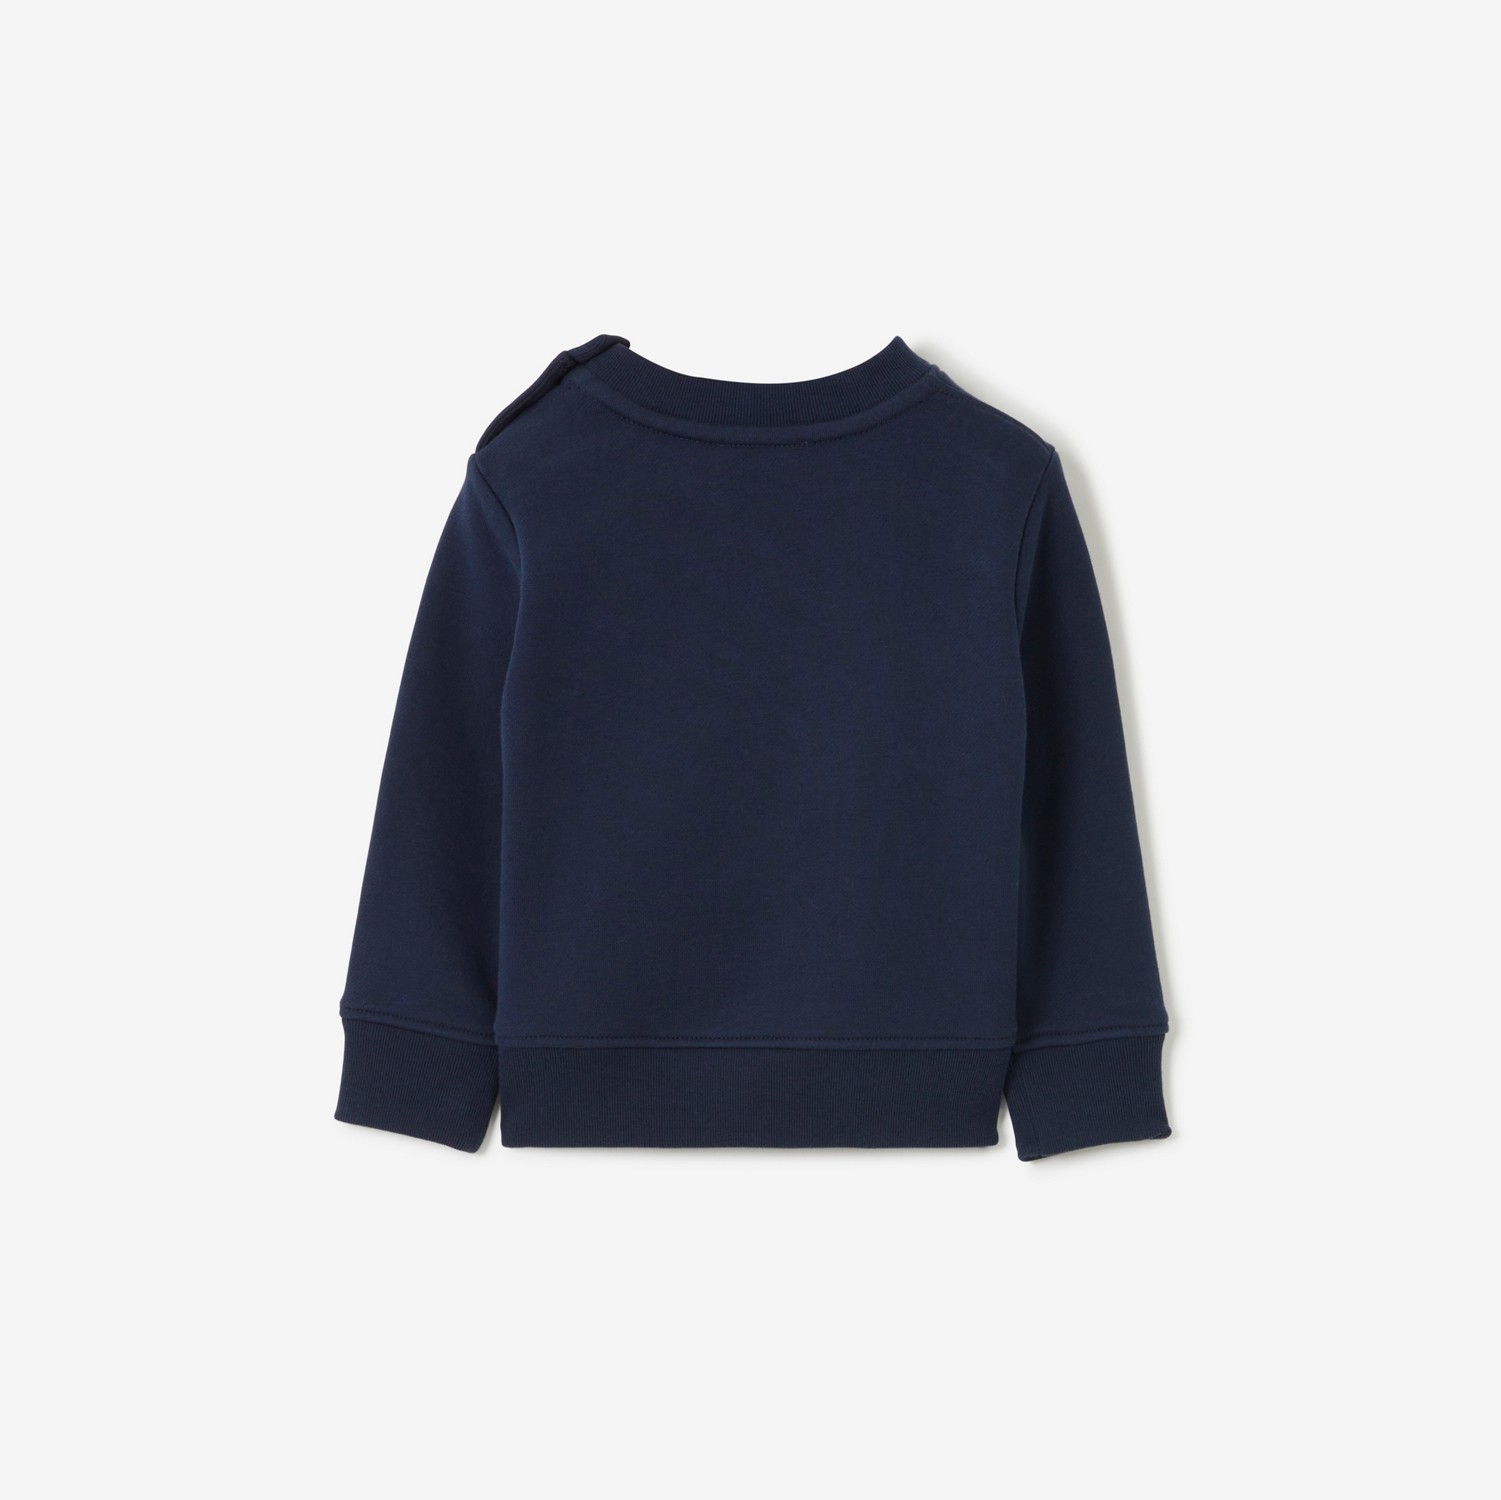 Baumwollsweatshirt mit Thomas Teddybär-Print (Dunkles Anthrazitblau) - Kinder | Burberry®